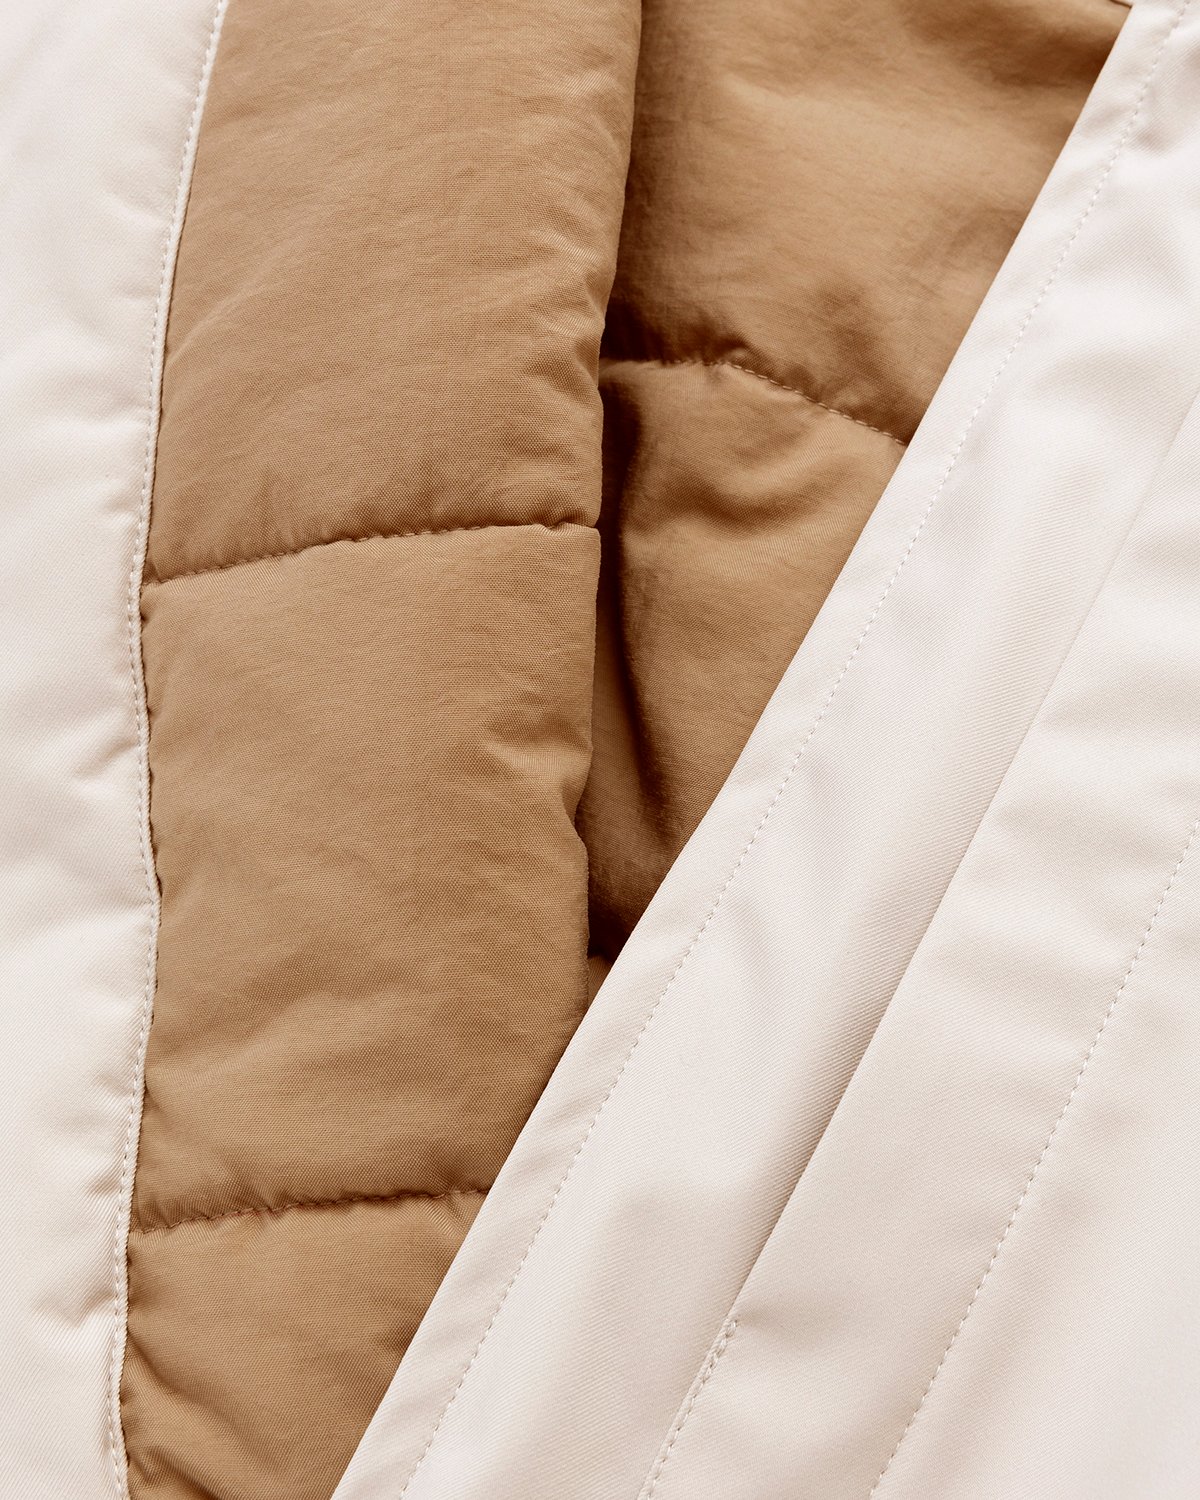 Arnar Mar Jonsson - Sympatex Patch Pocket Outerwear Jacket Beige - Clothing - Beige - Image 8